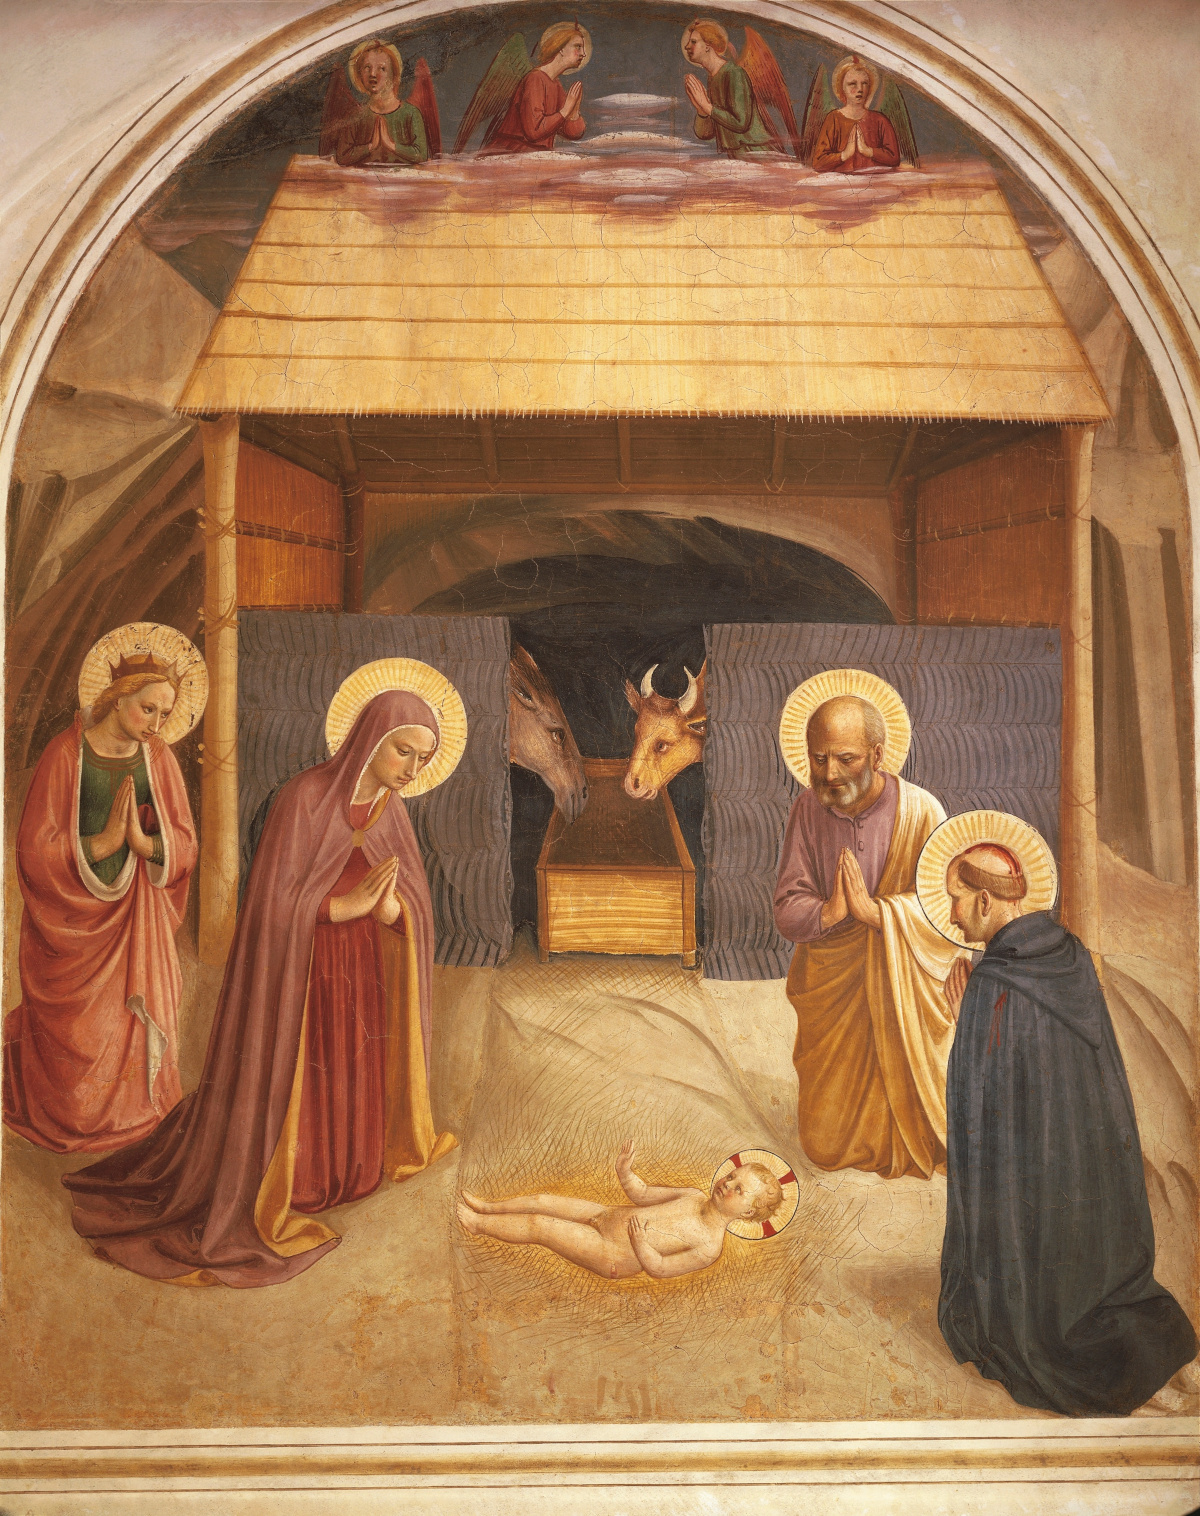 Fra Angelico, fresk "Narodziny Pańskie", 1437-1445. Fot. G. Dagli Orti/De Agostini/Forum